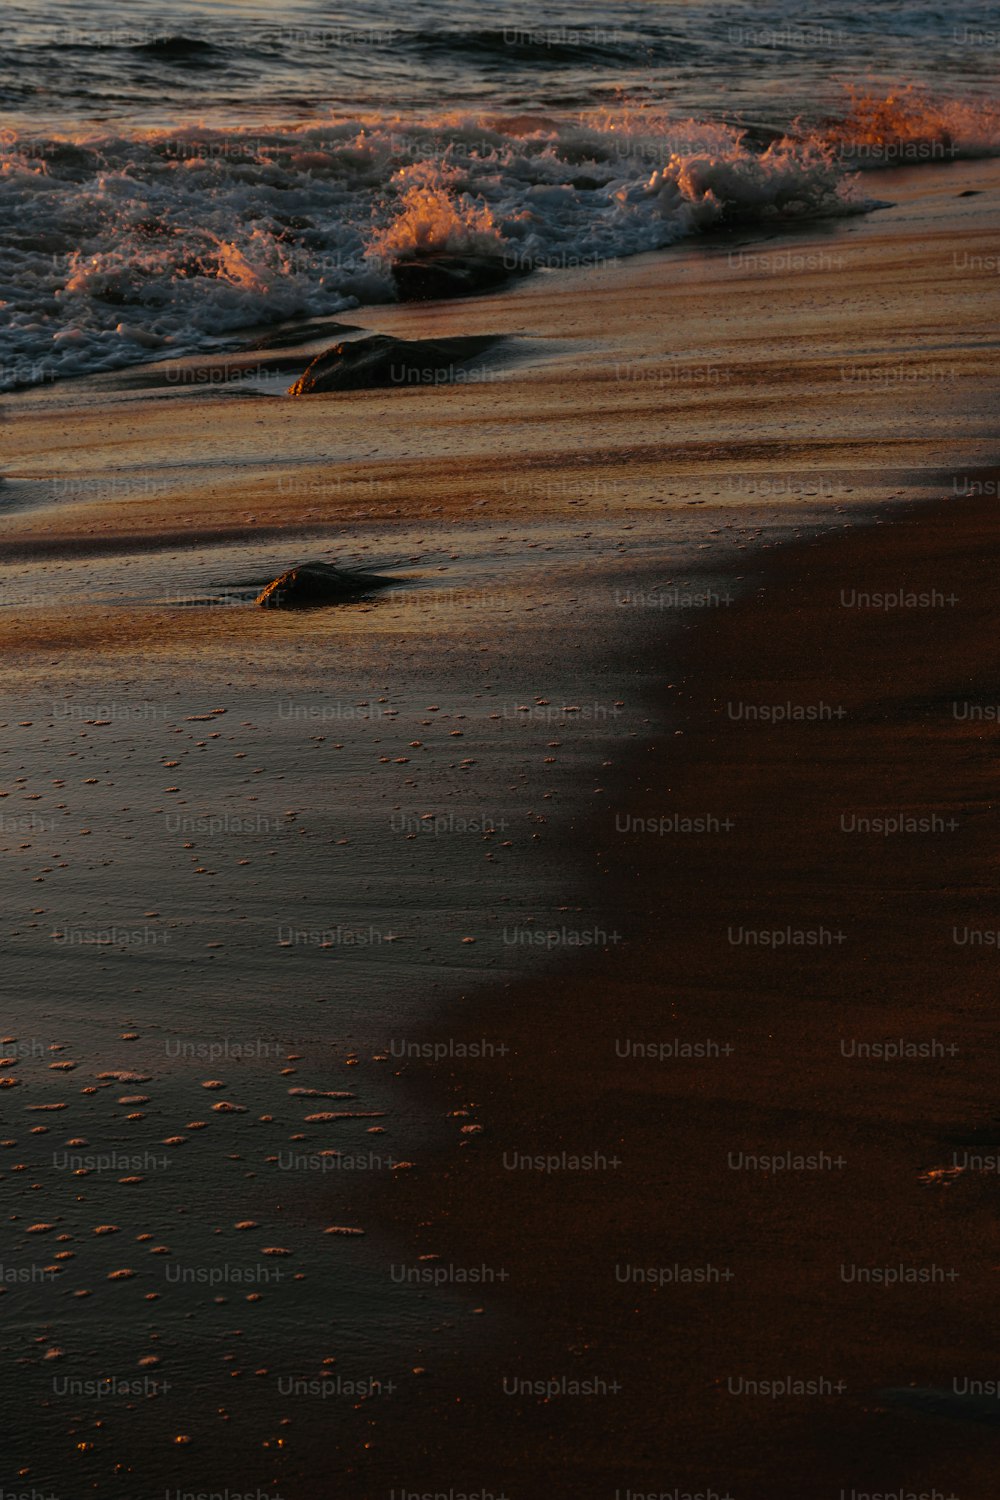 Un oiseau debout sur une plage au bord de l’océan